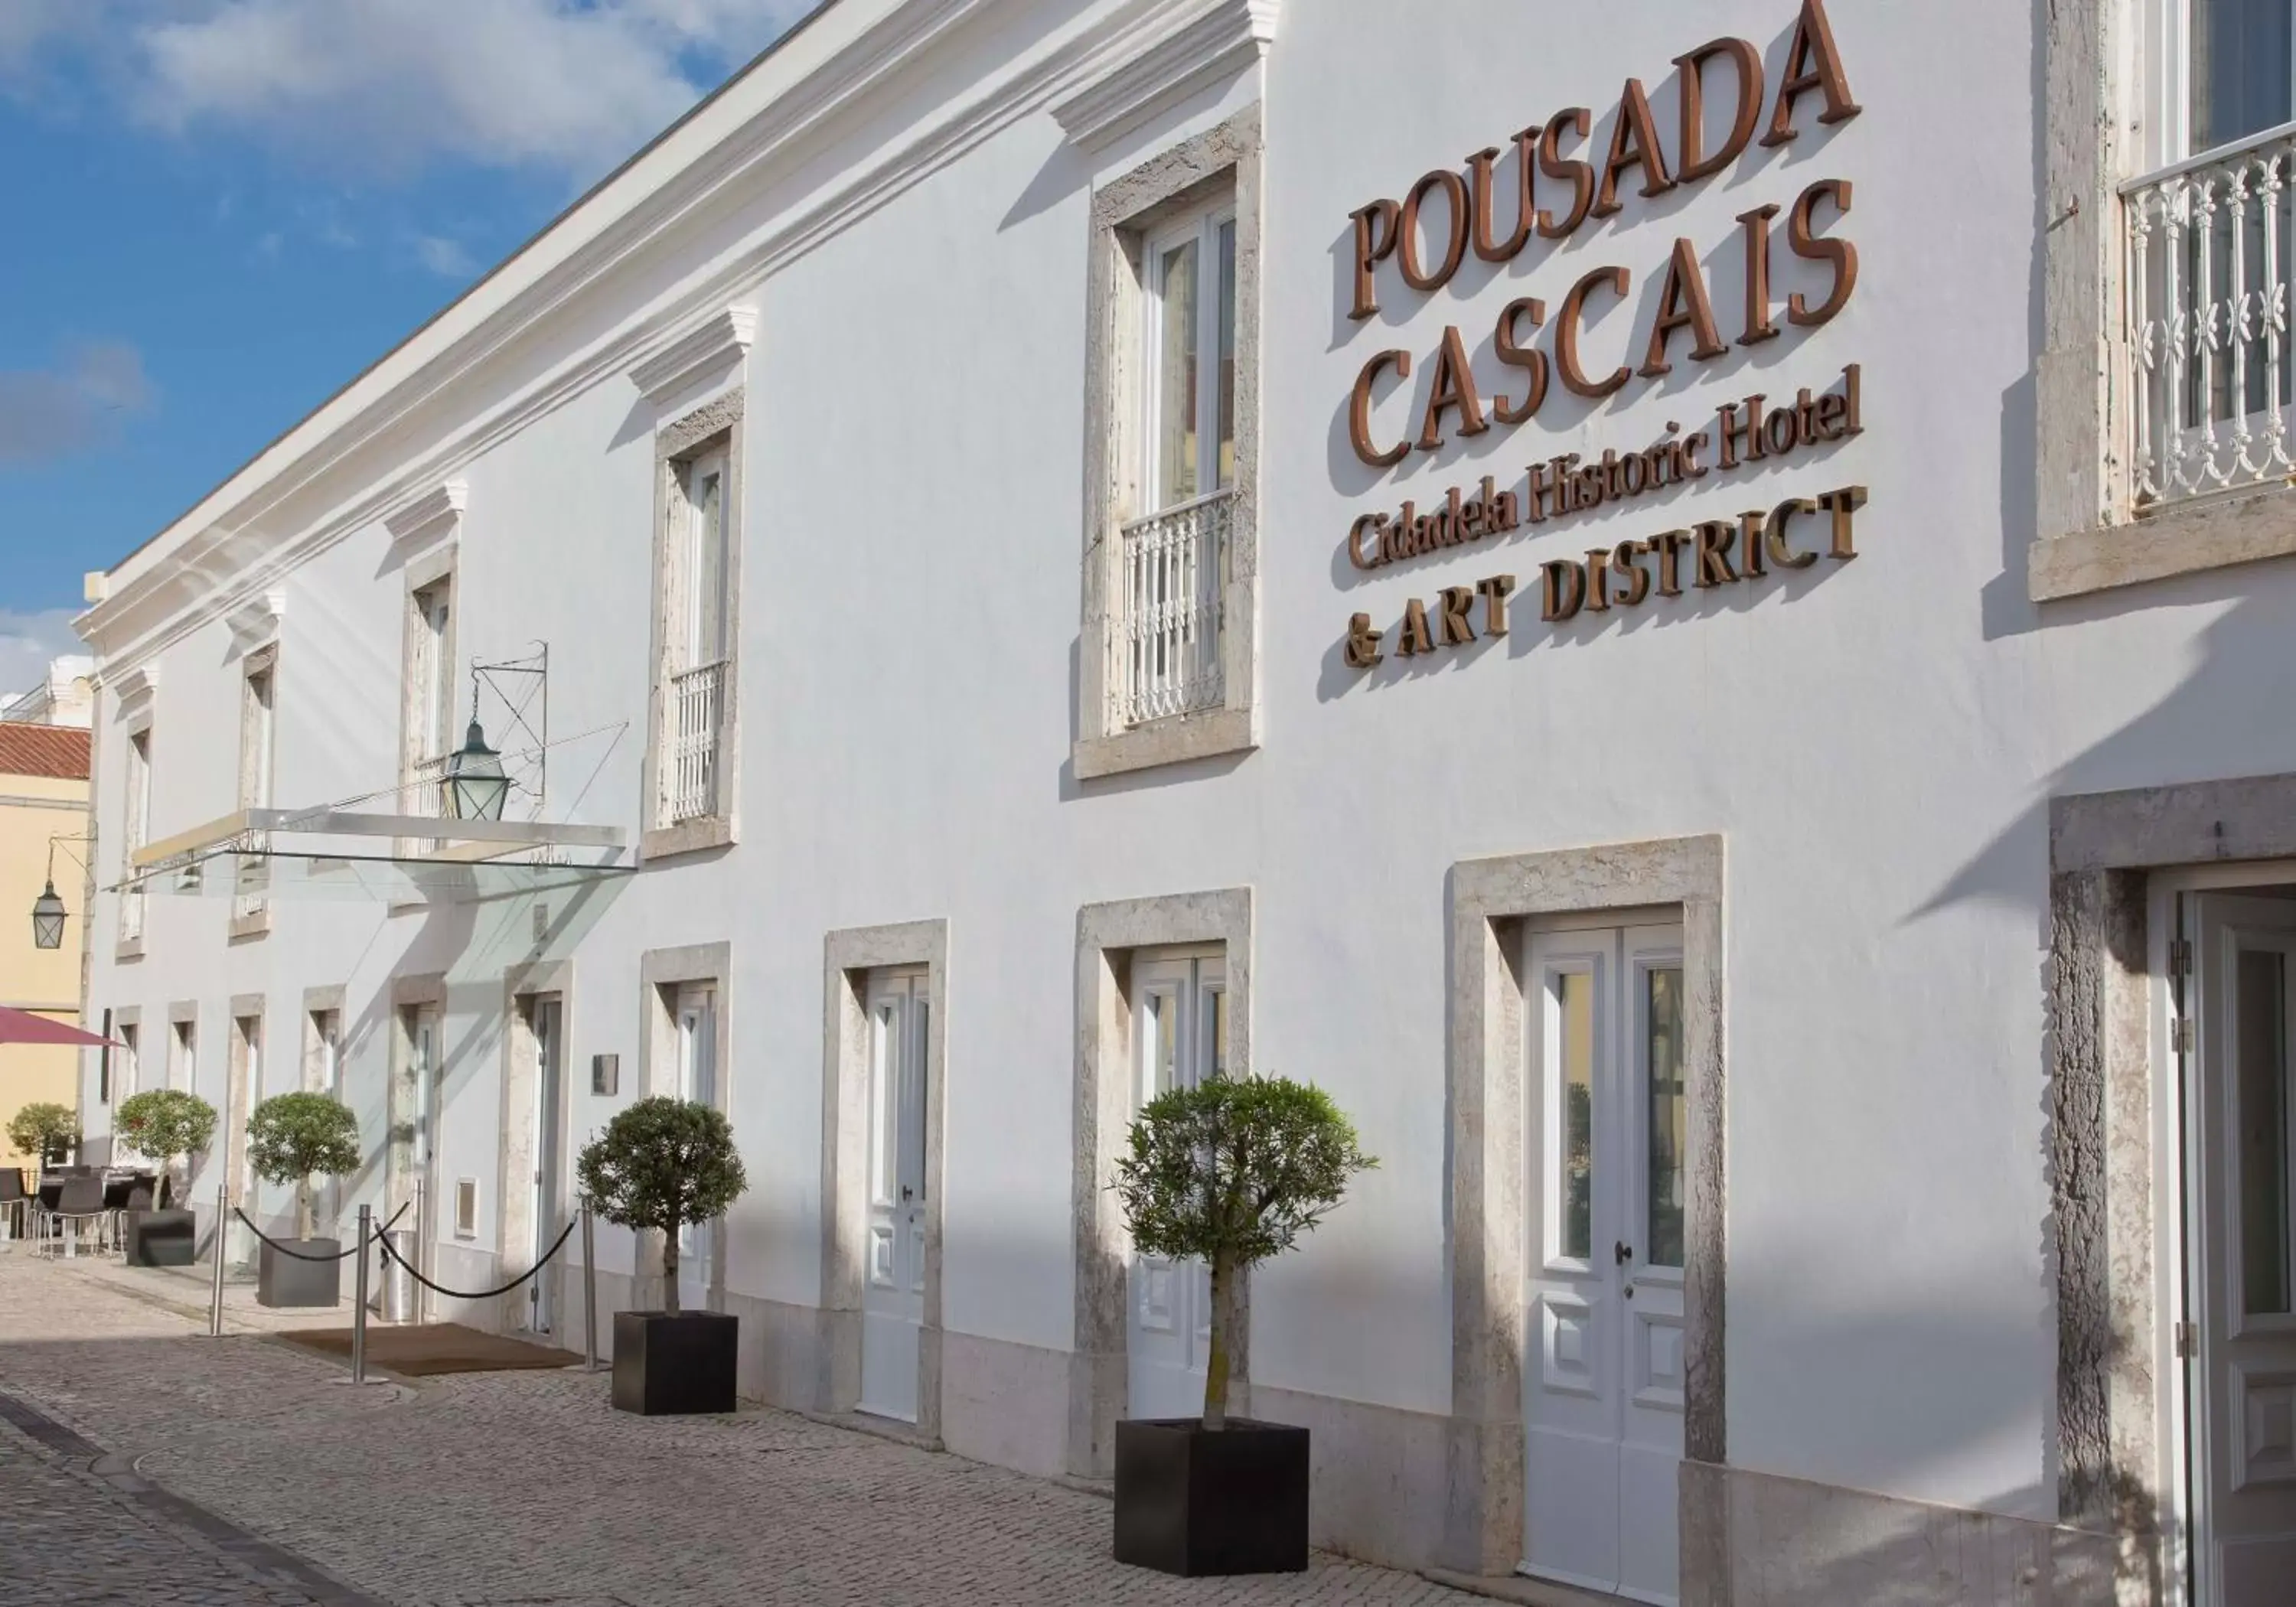 Facade/entrance in Pestana Cidadela Cascais - Pousada & Art District